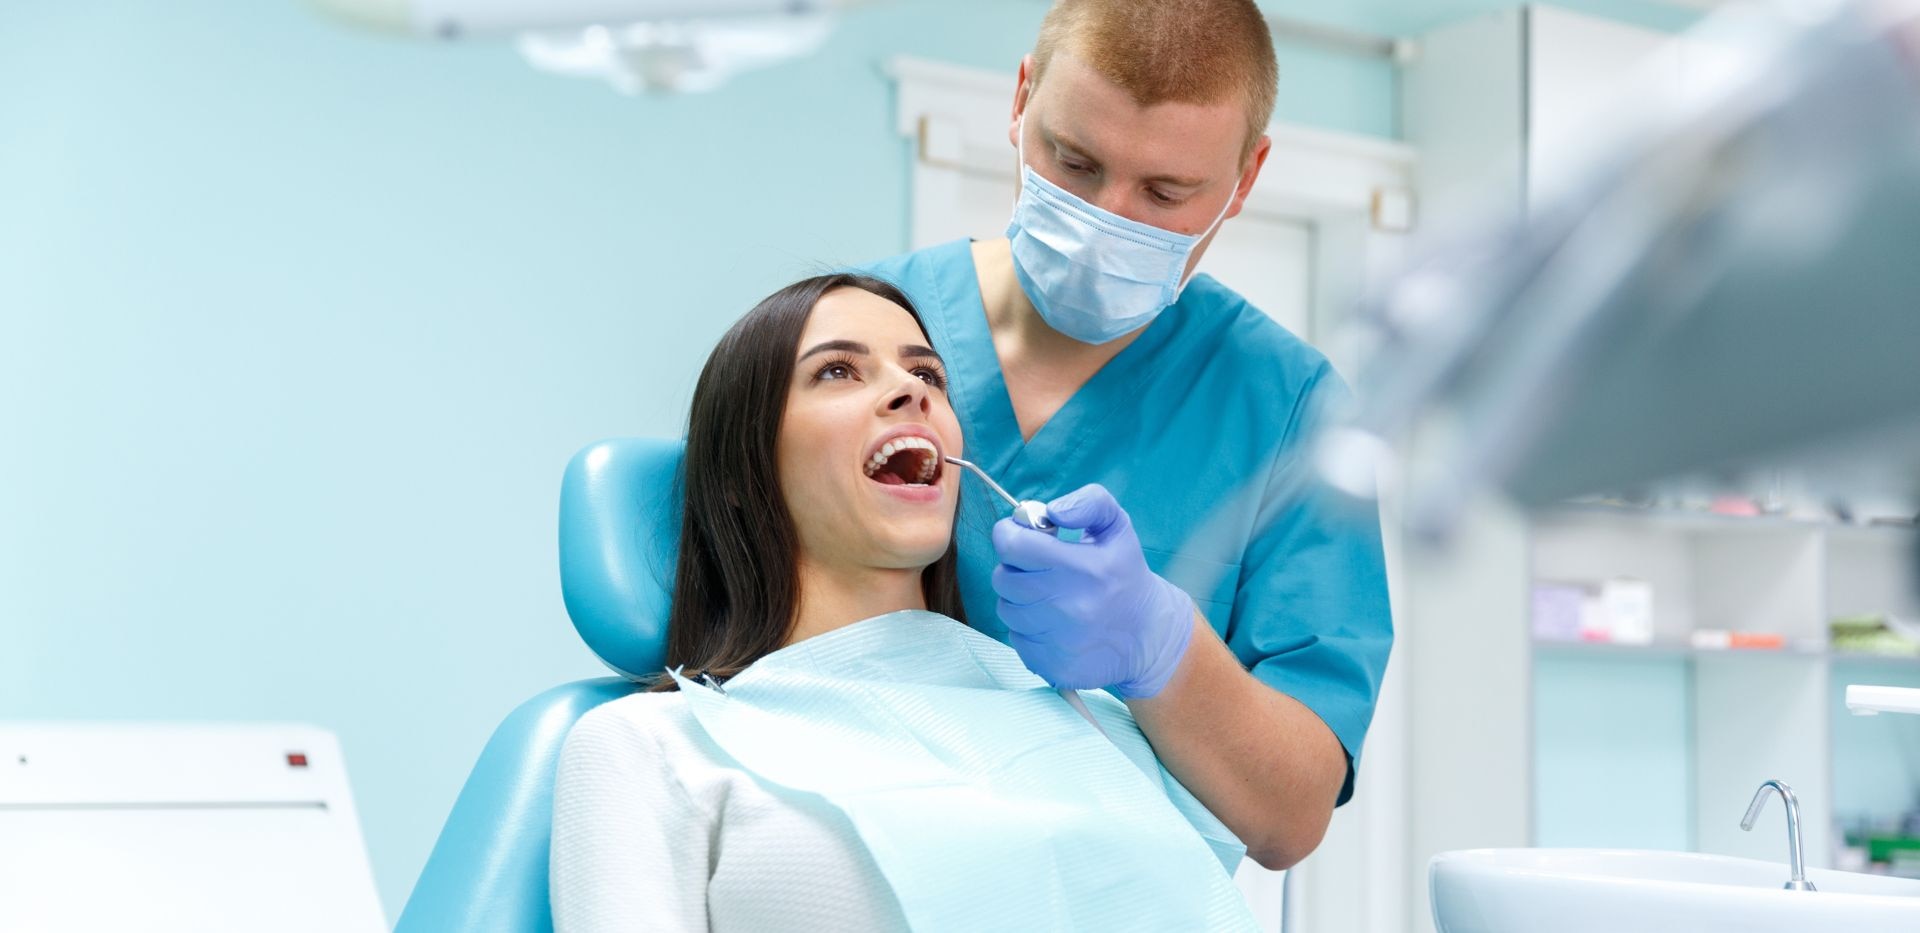 Žena na zubařském křesle během kontroly u zubaře.